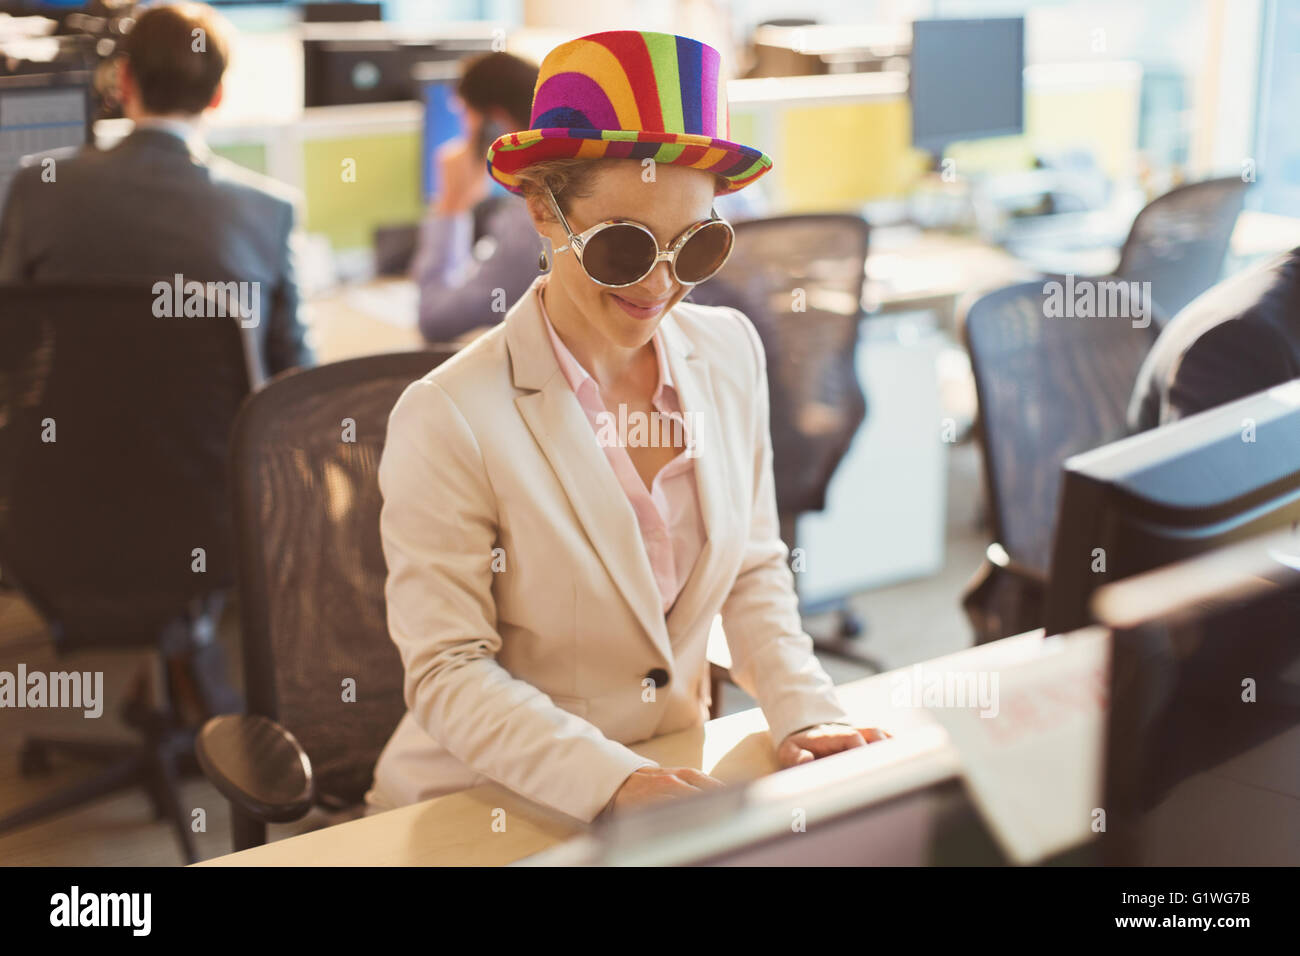 Portrait espiègle silly lunettes de soleil et chapeau à rayures at computer in office Banque D'Images